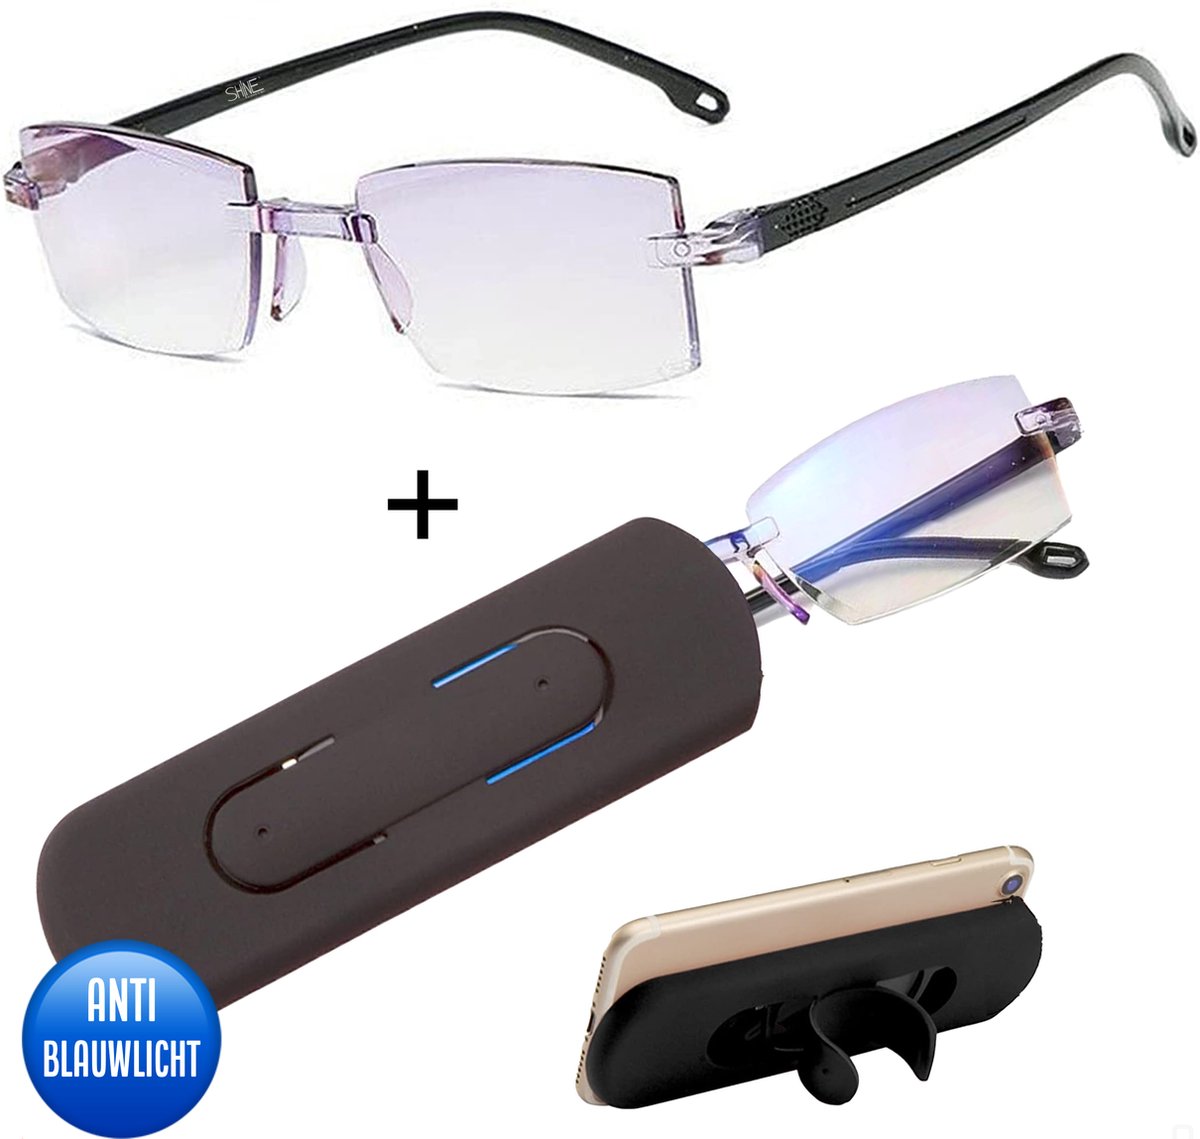 Shine Anti blauw Licht Computerbril 2.50 - Multifocale Beeldschermbril - Leesbril Voor Dames en Heren - Incl Accessoires